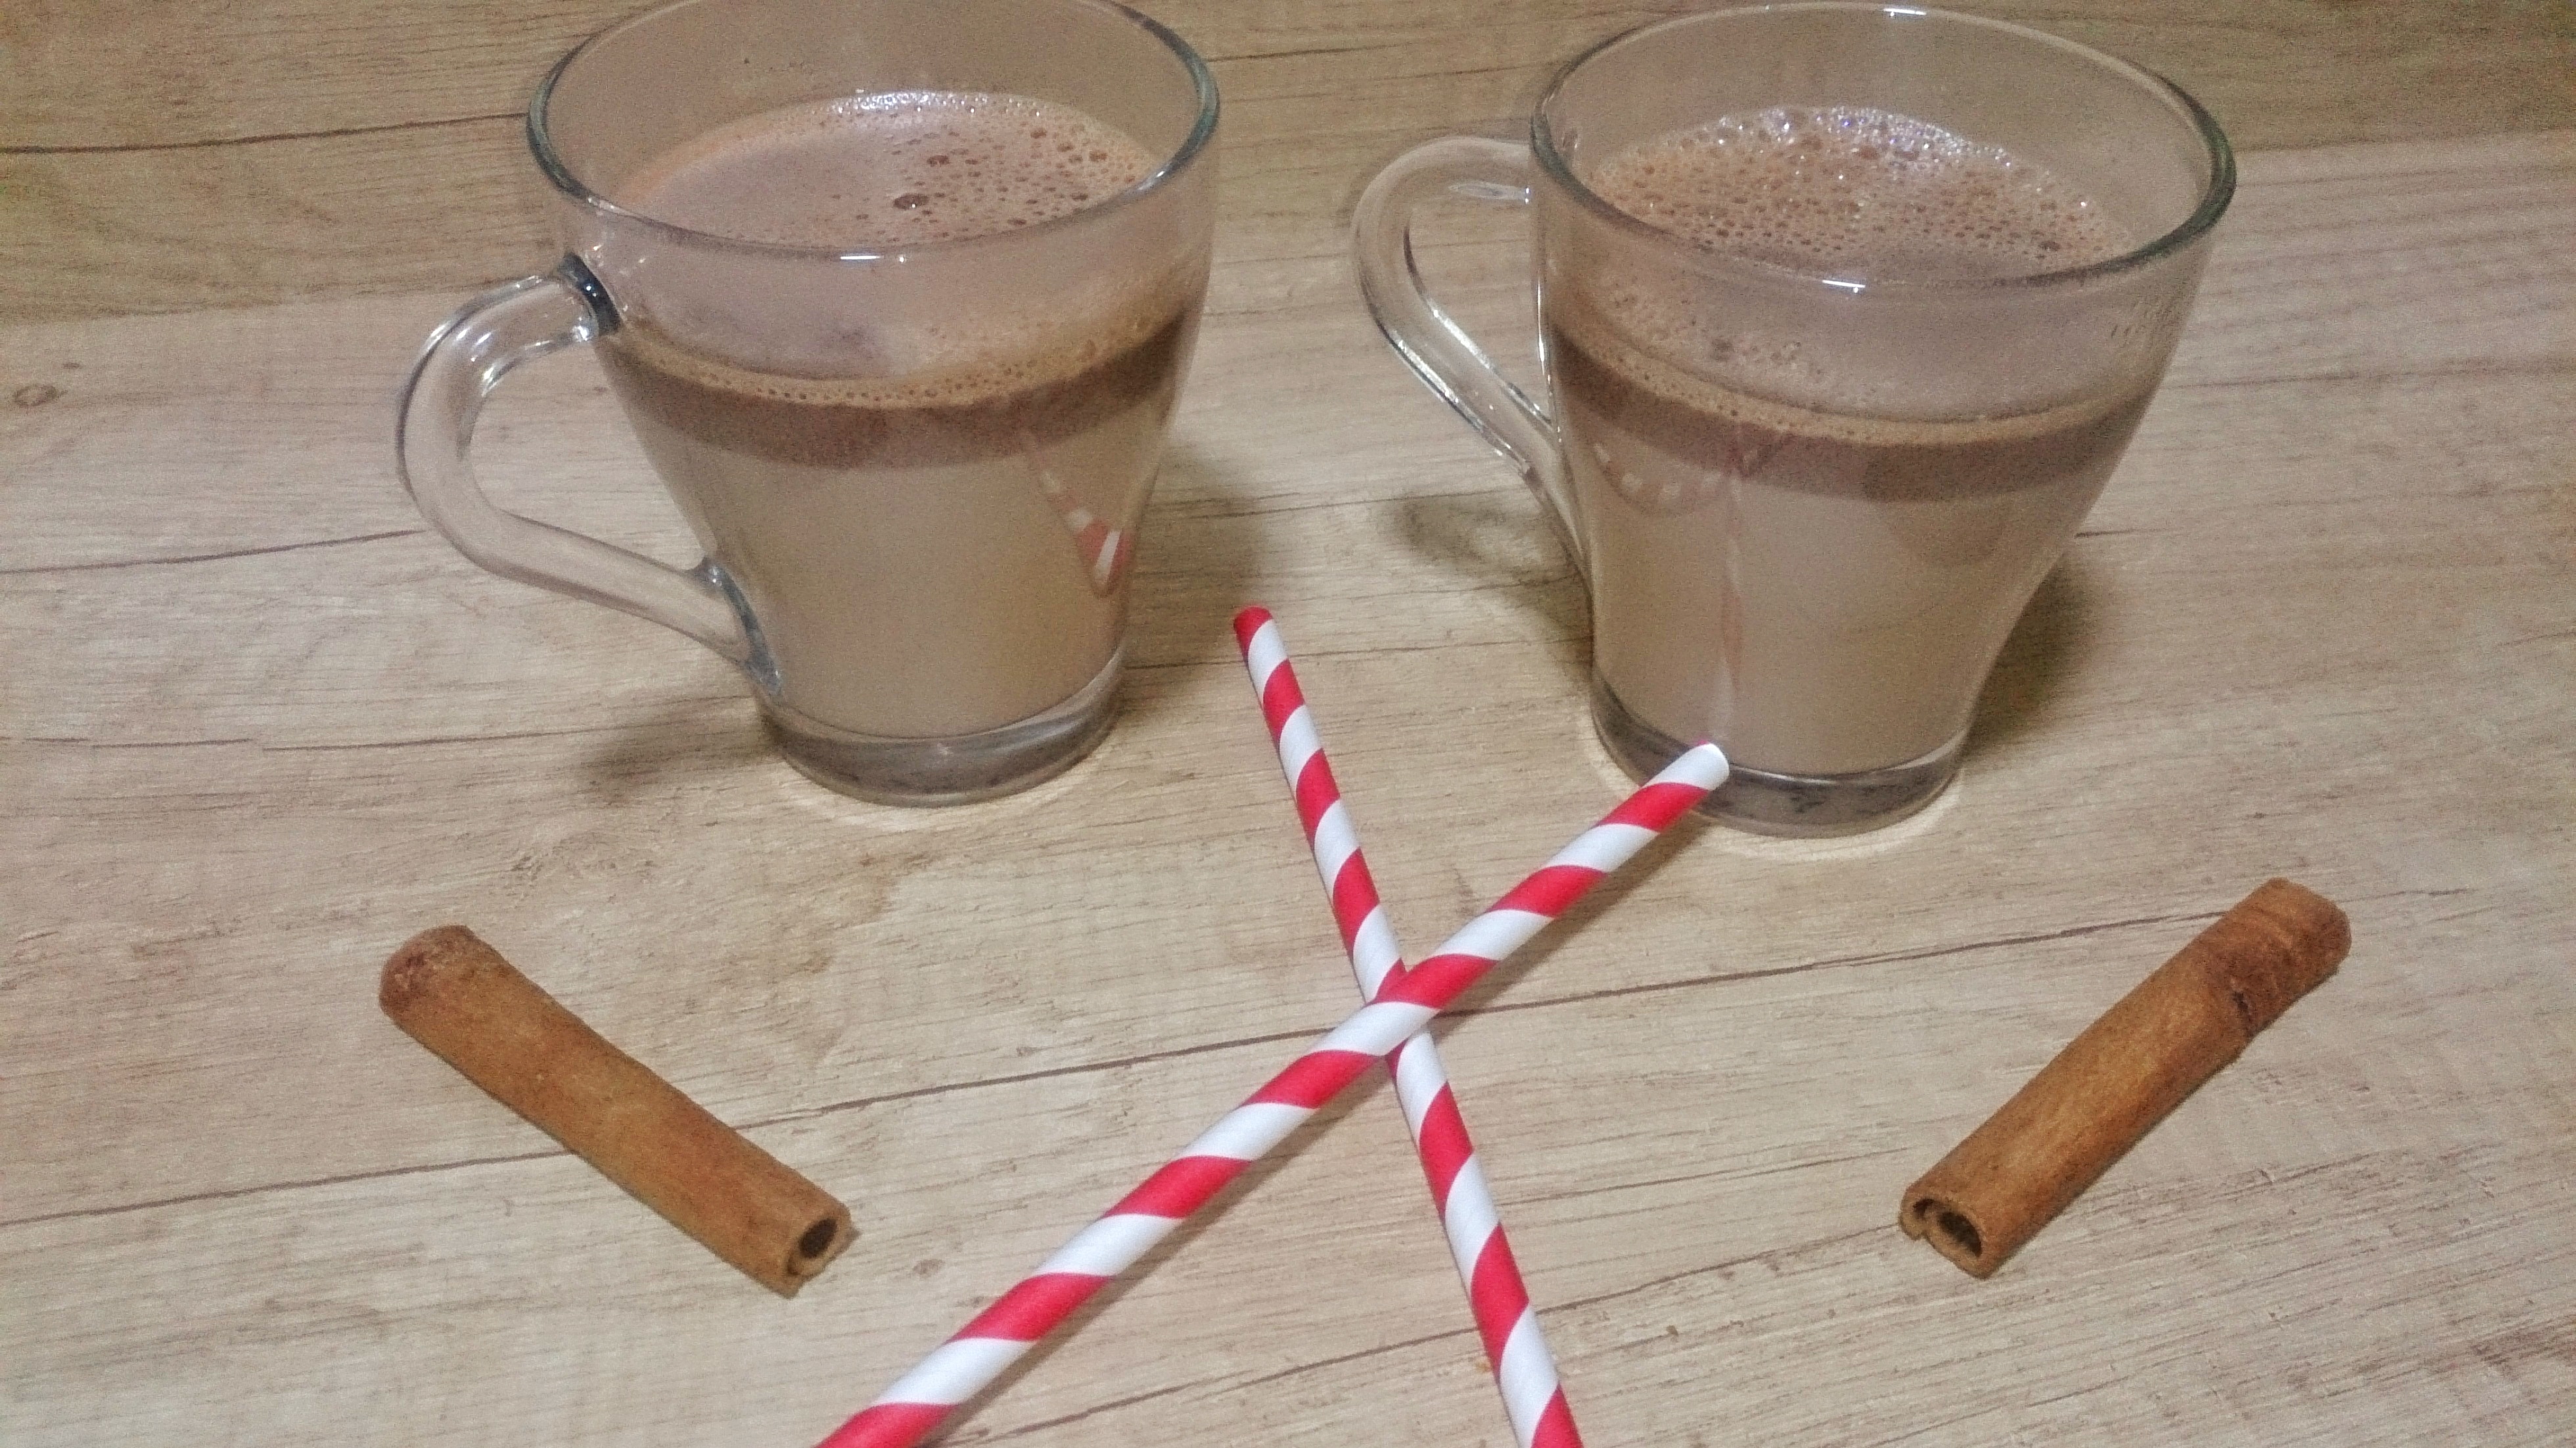 Ciocolata calda cu Finetti